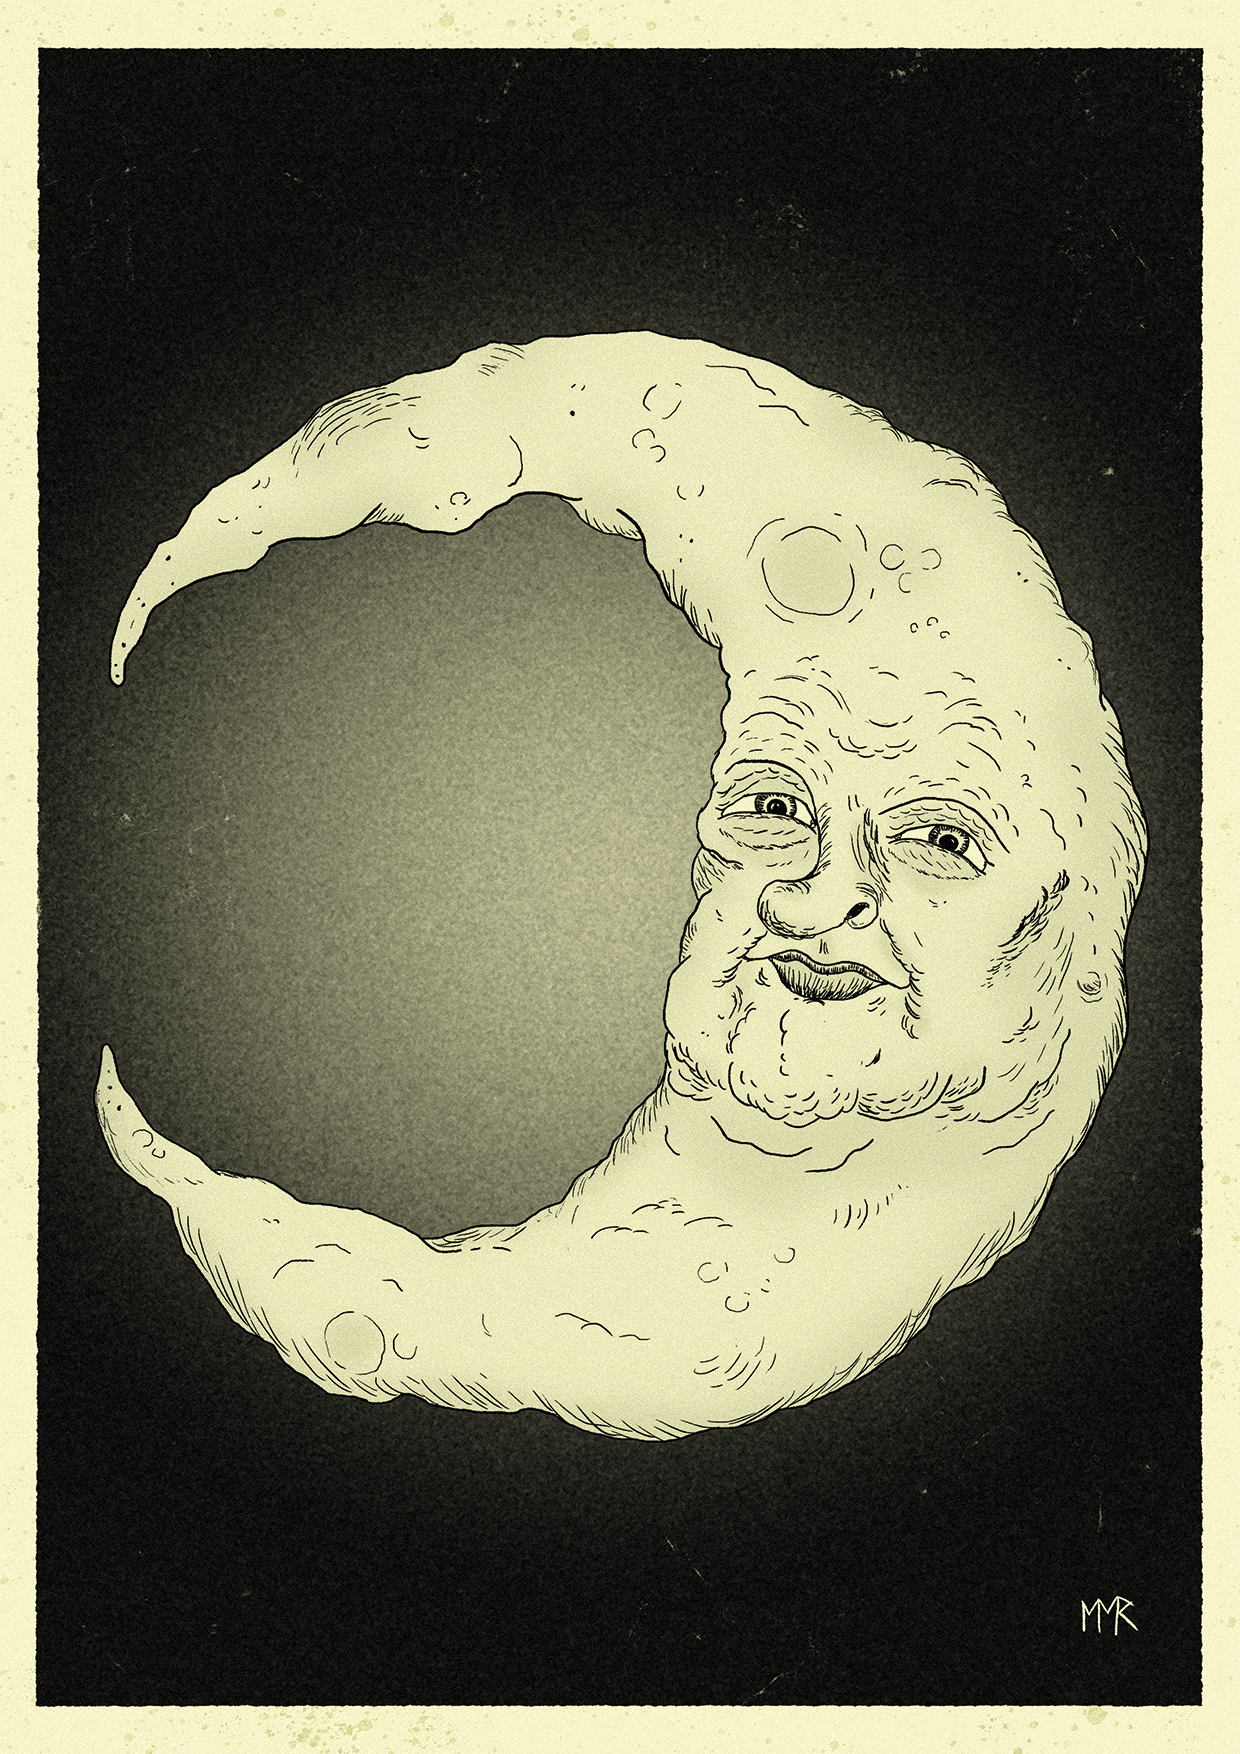 Lunar Pareidolia